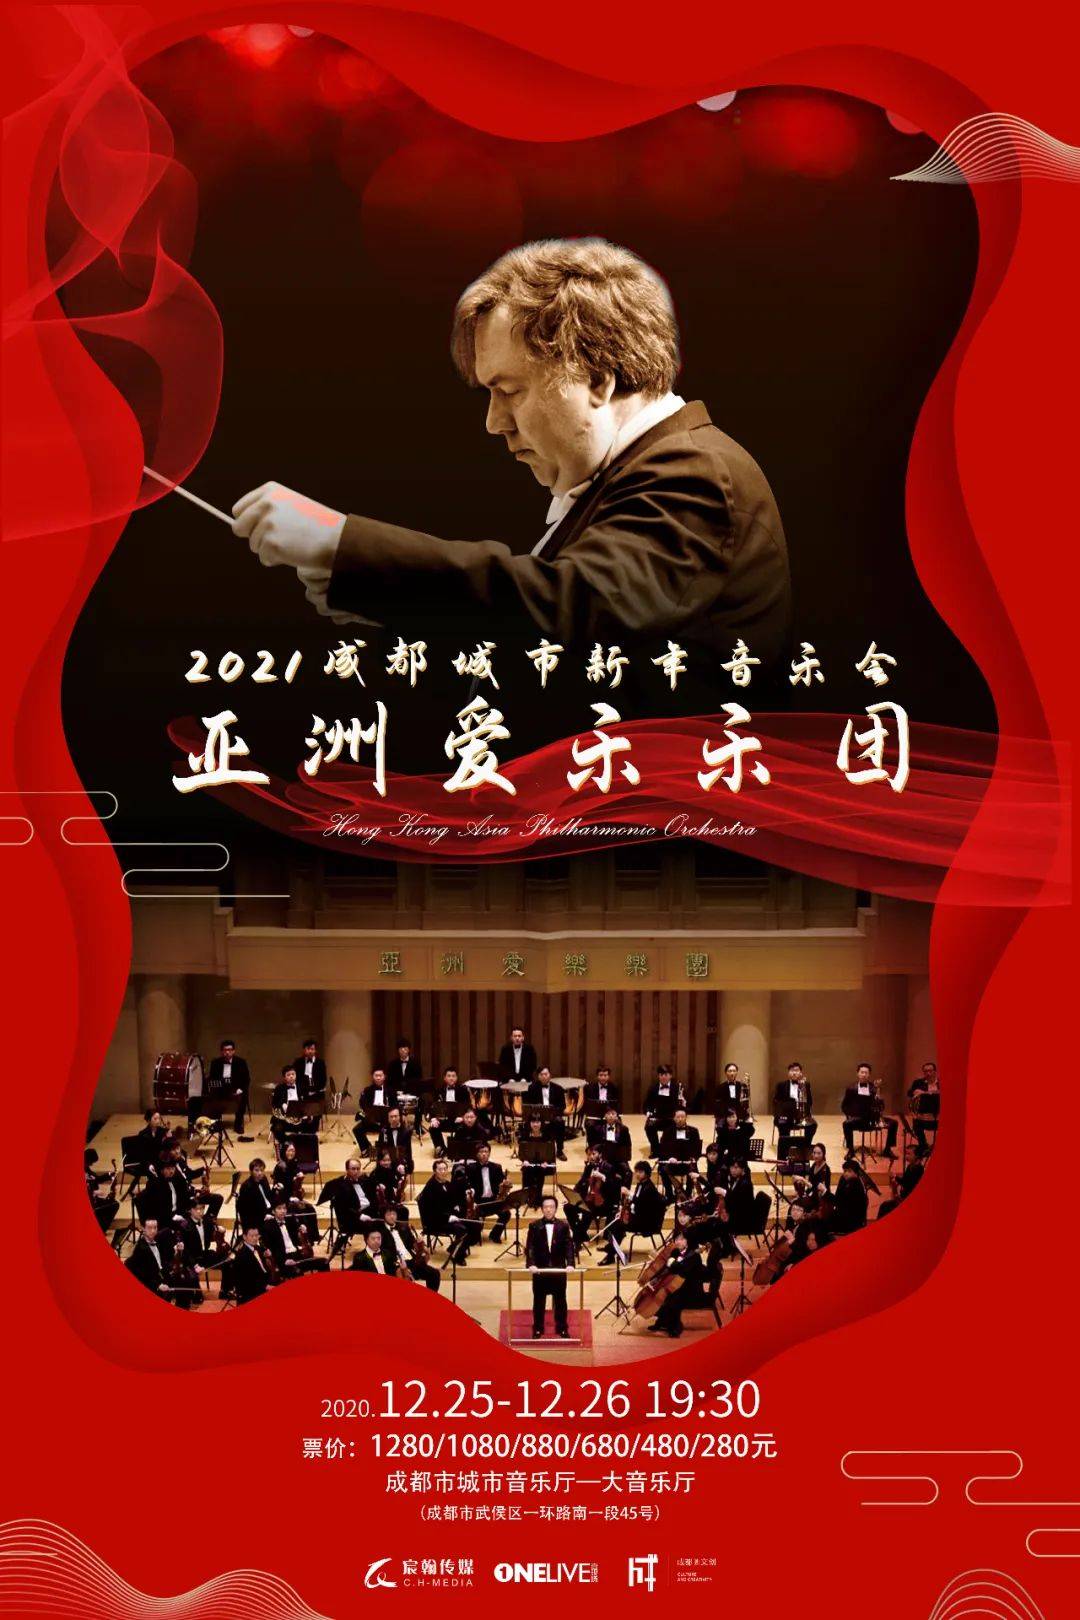 新年音乐会,和亚洲爱乐乐团共度圣诞夜!